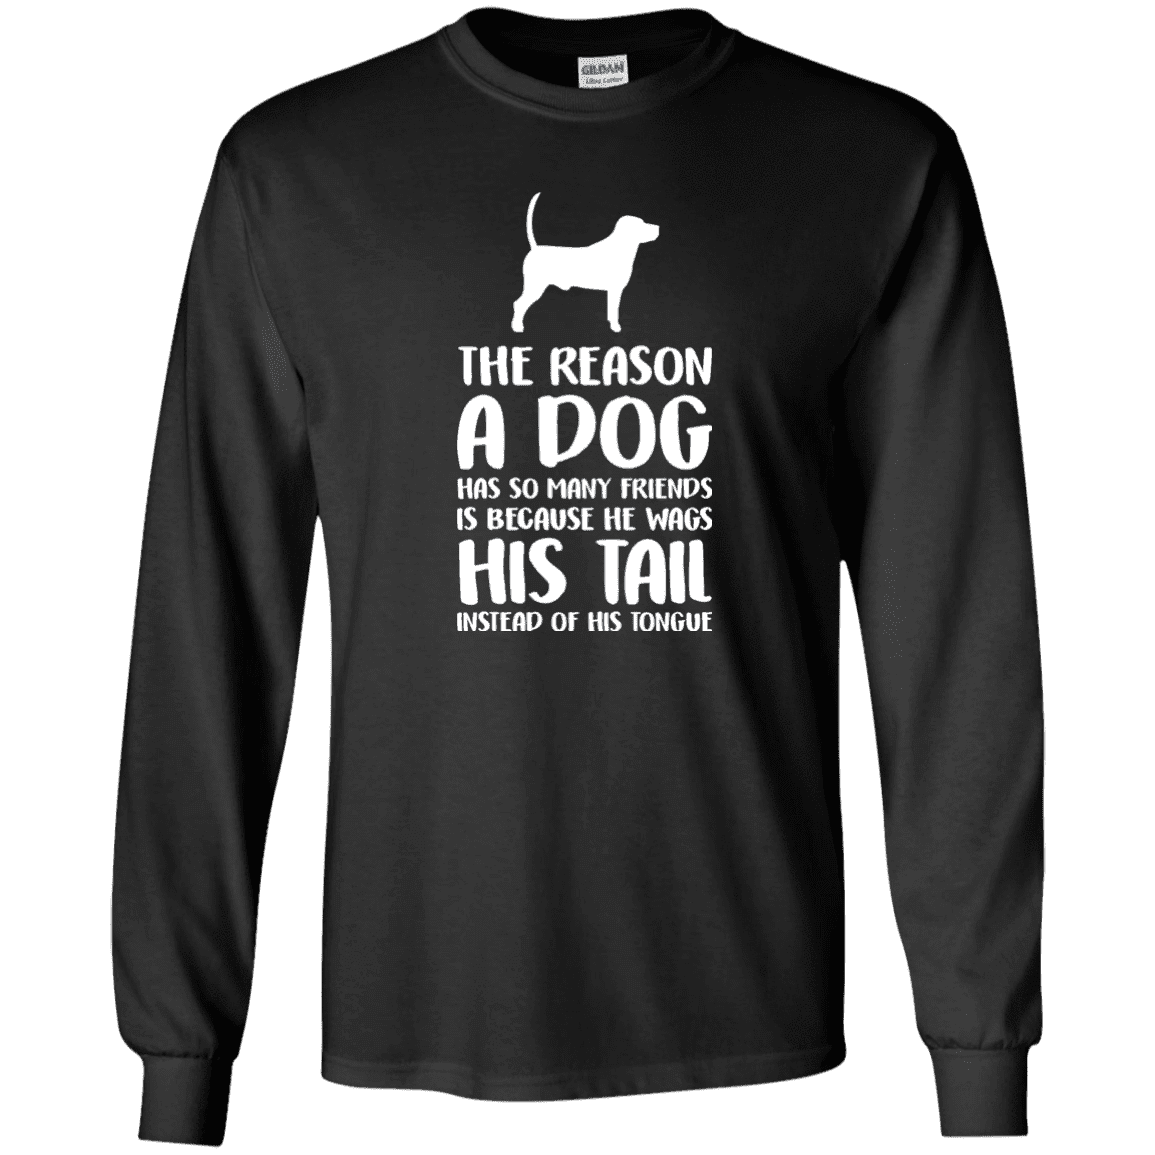 The Reason A Dog Has So Many Friends - Long Sleeve T Shirt.